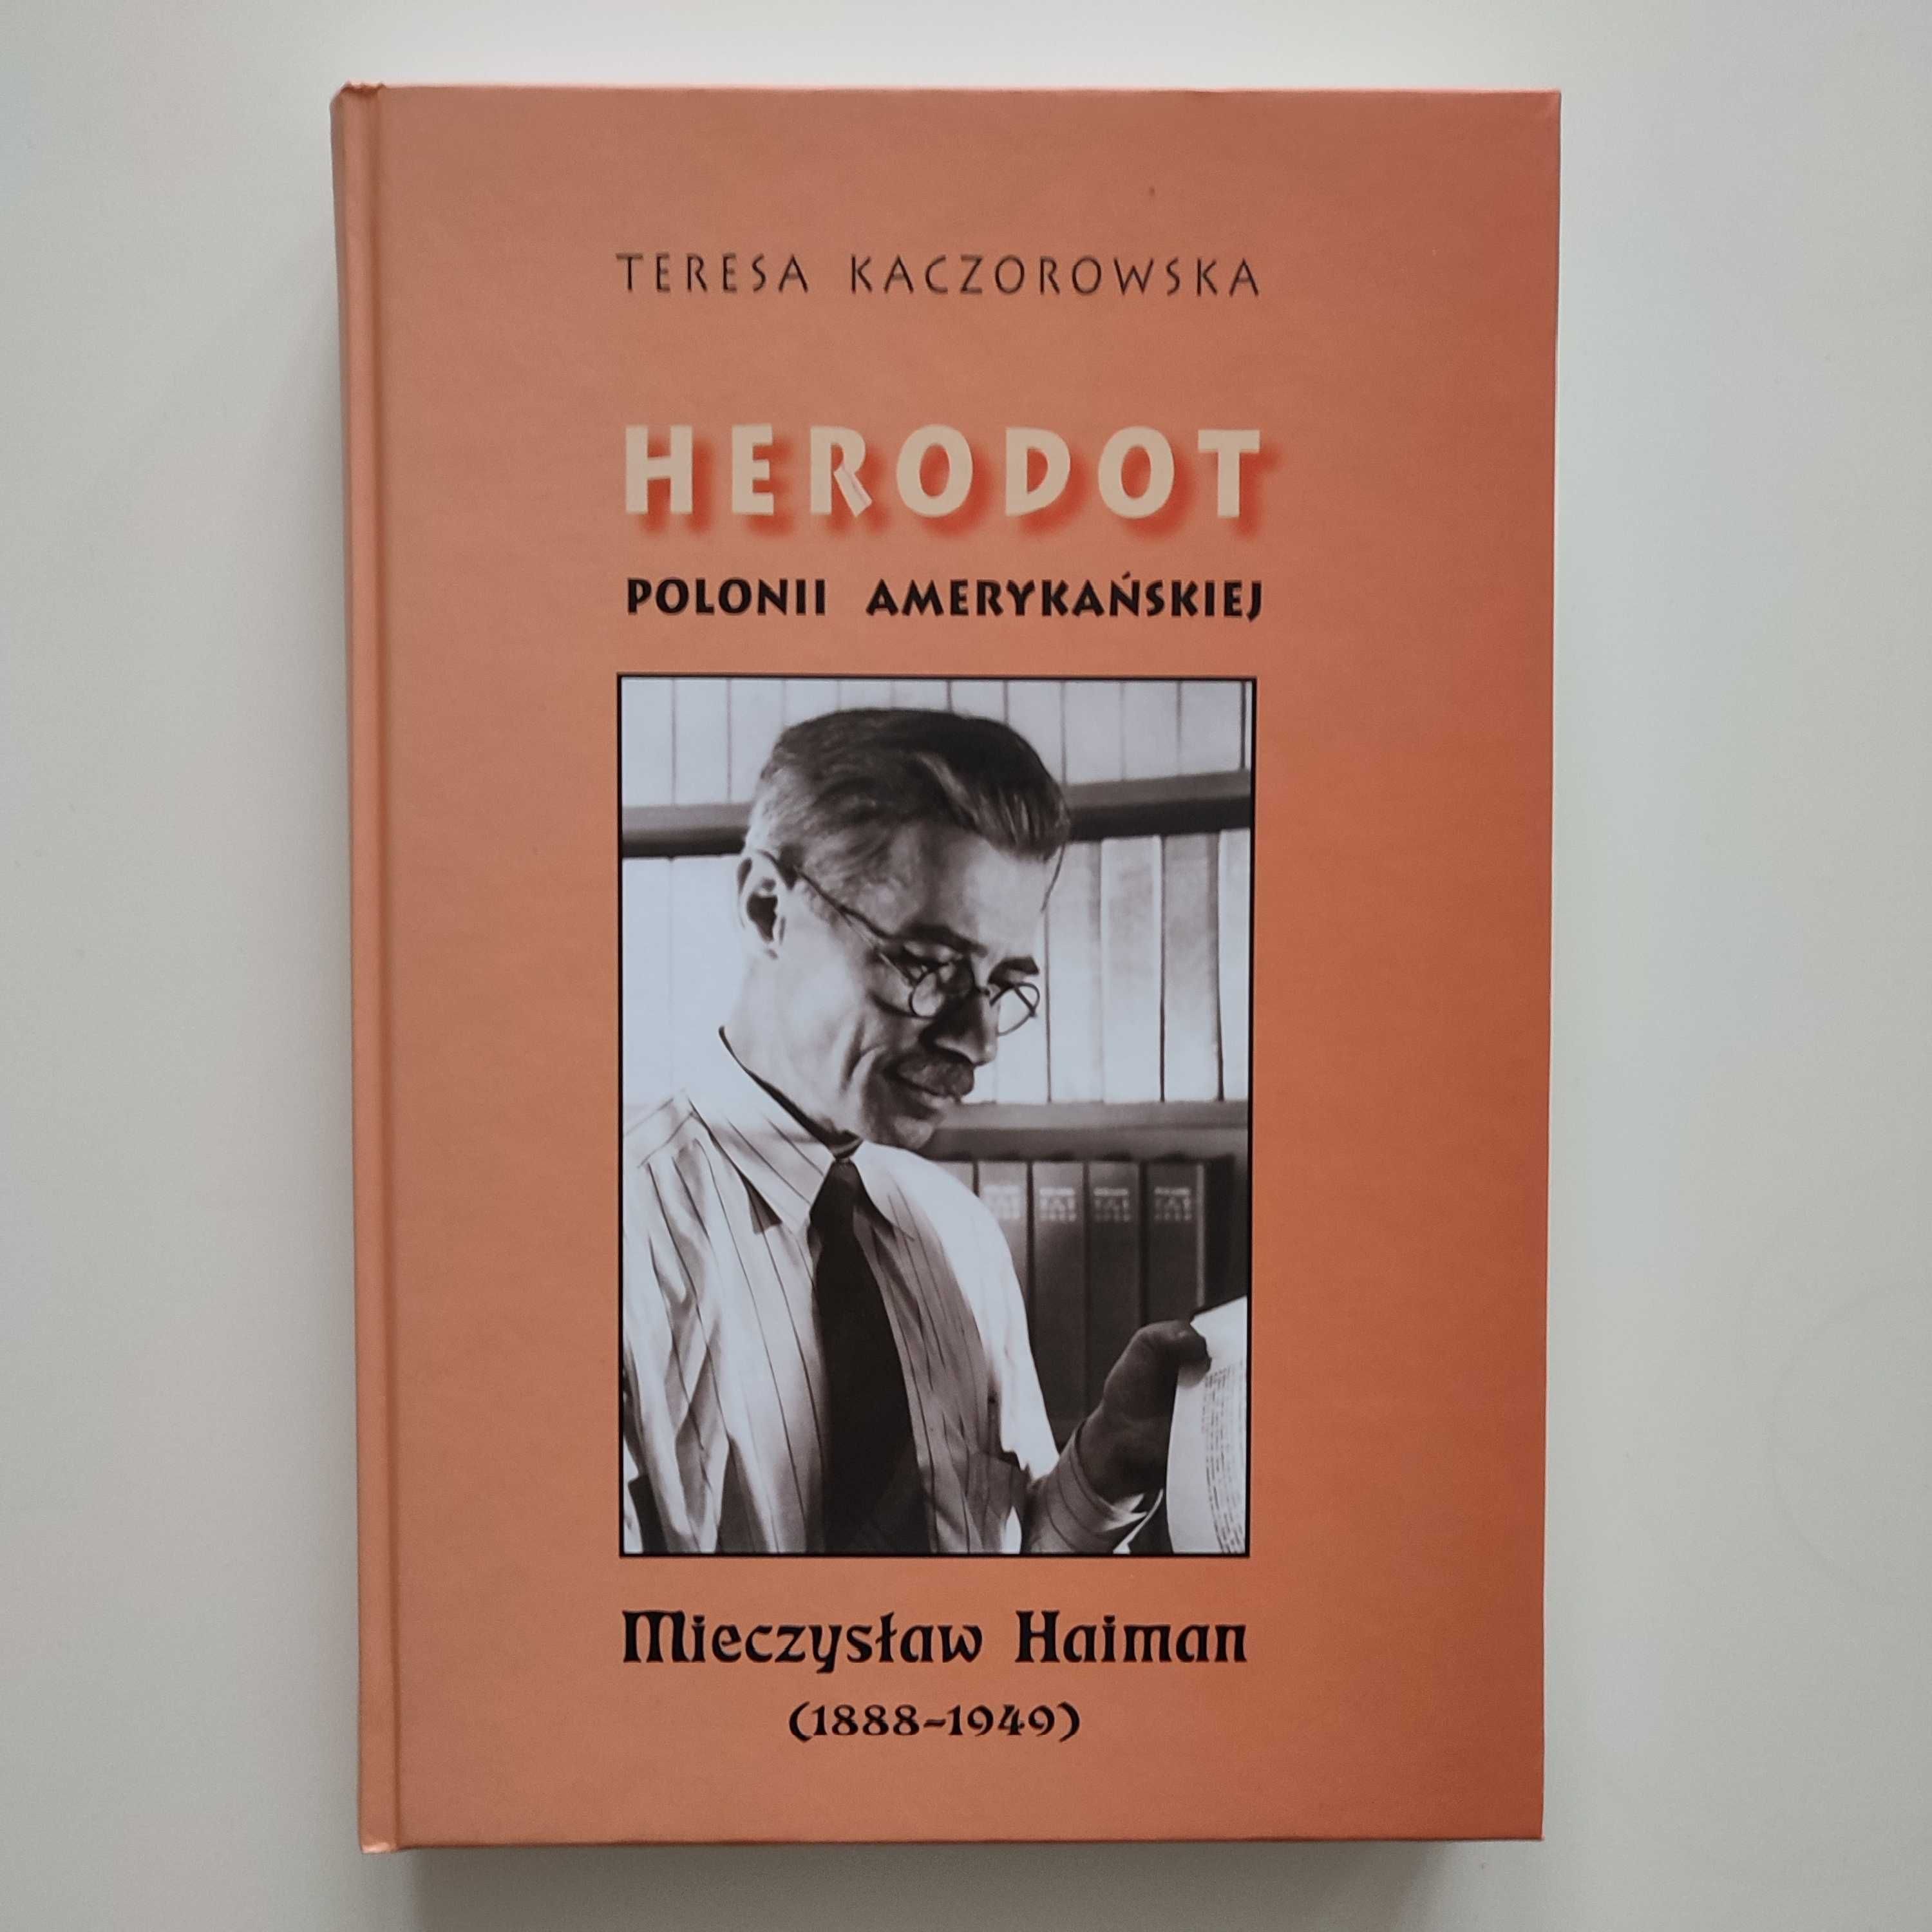 Herodot Polonii amerykańskiej - Teresa Kaczorowska